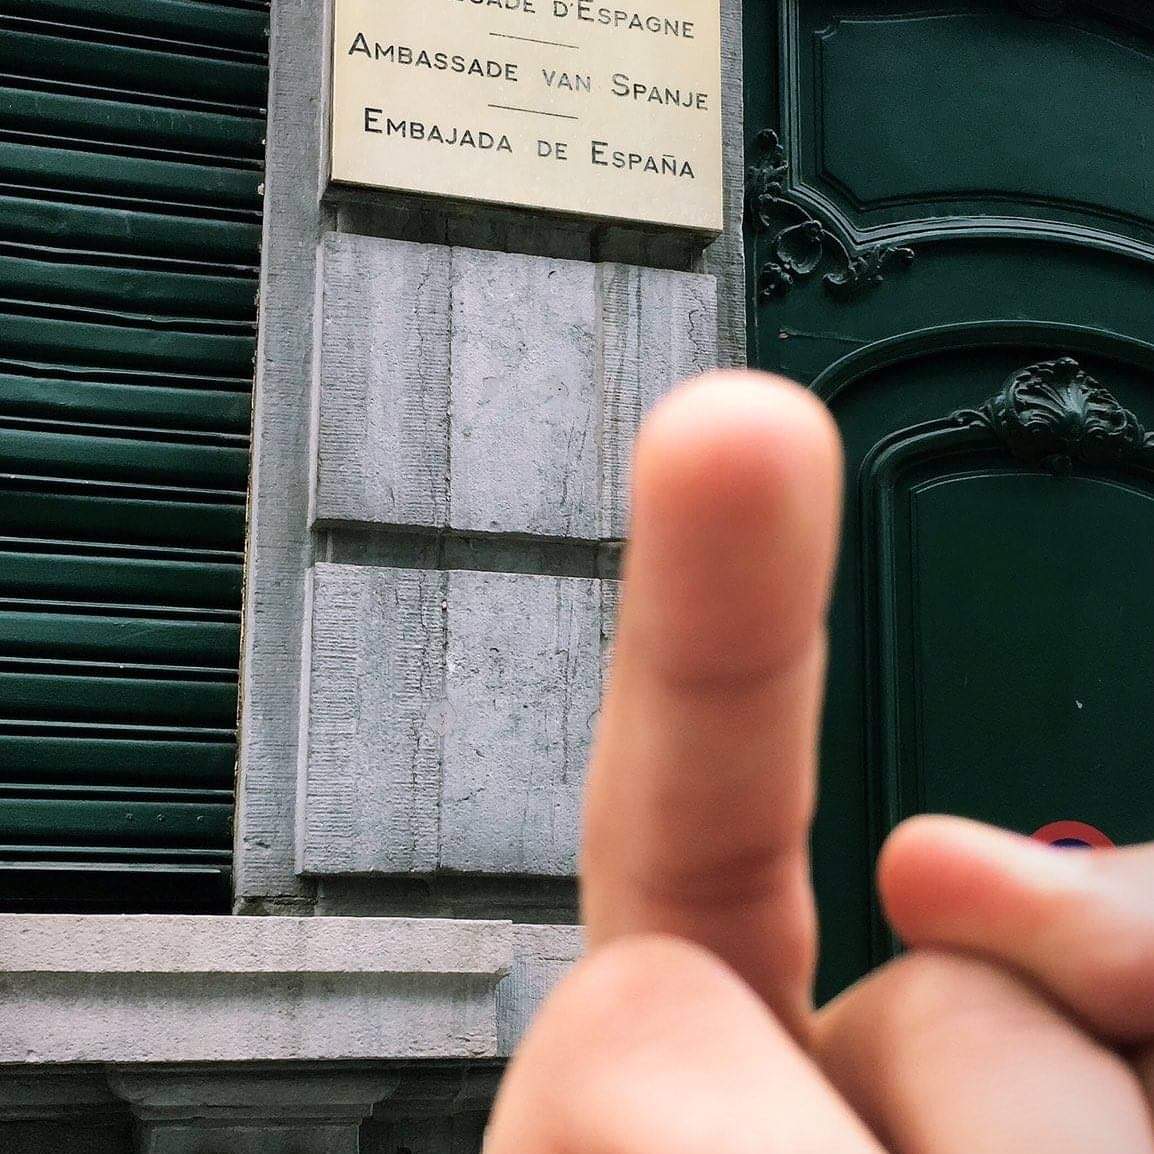 El gest eloqüent de Valtònyc davant l'ambaixada espanyola a Bèlgica